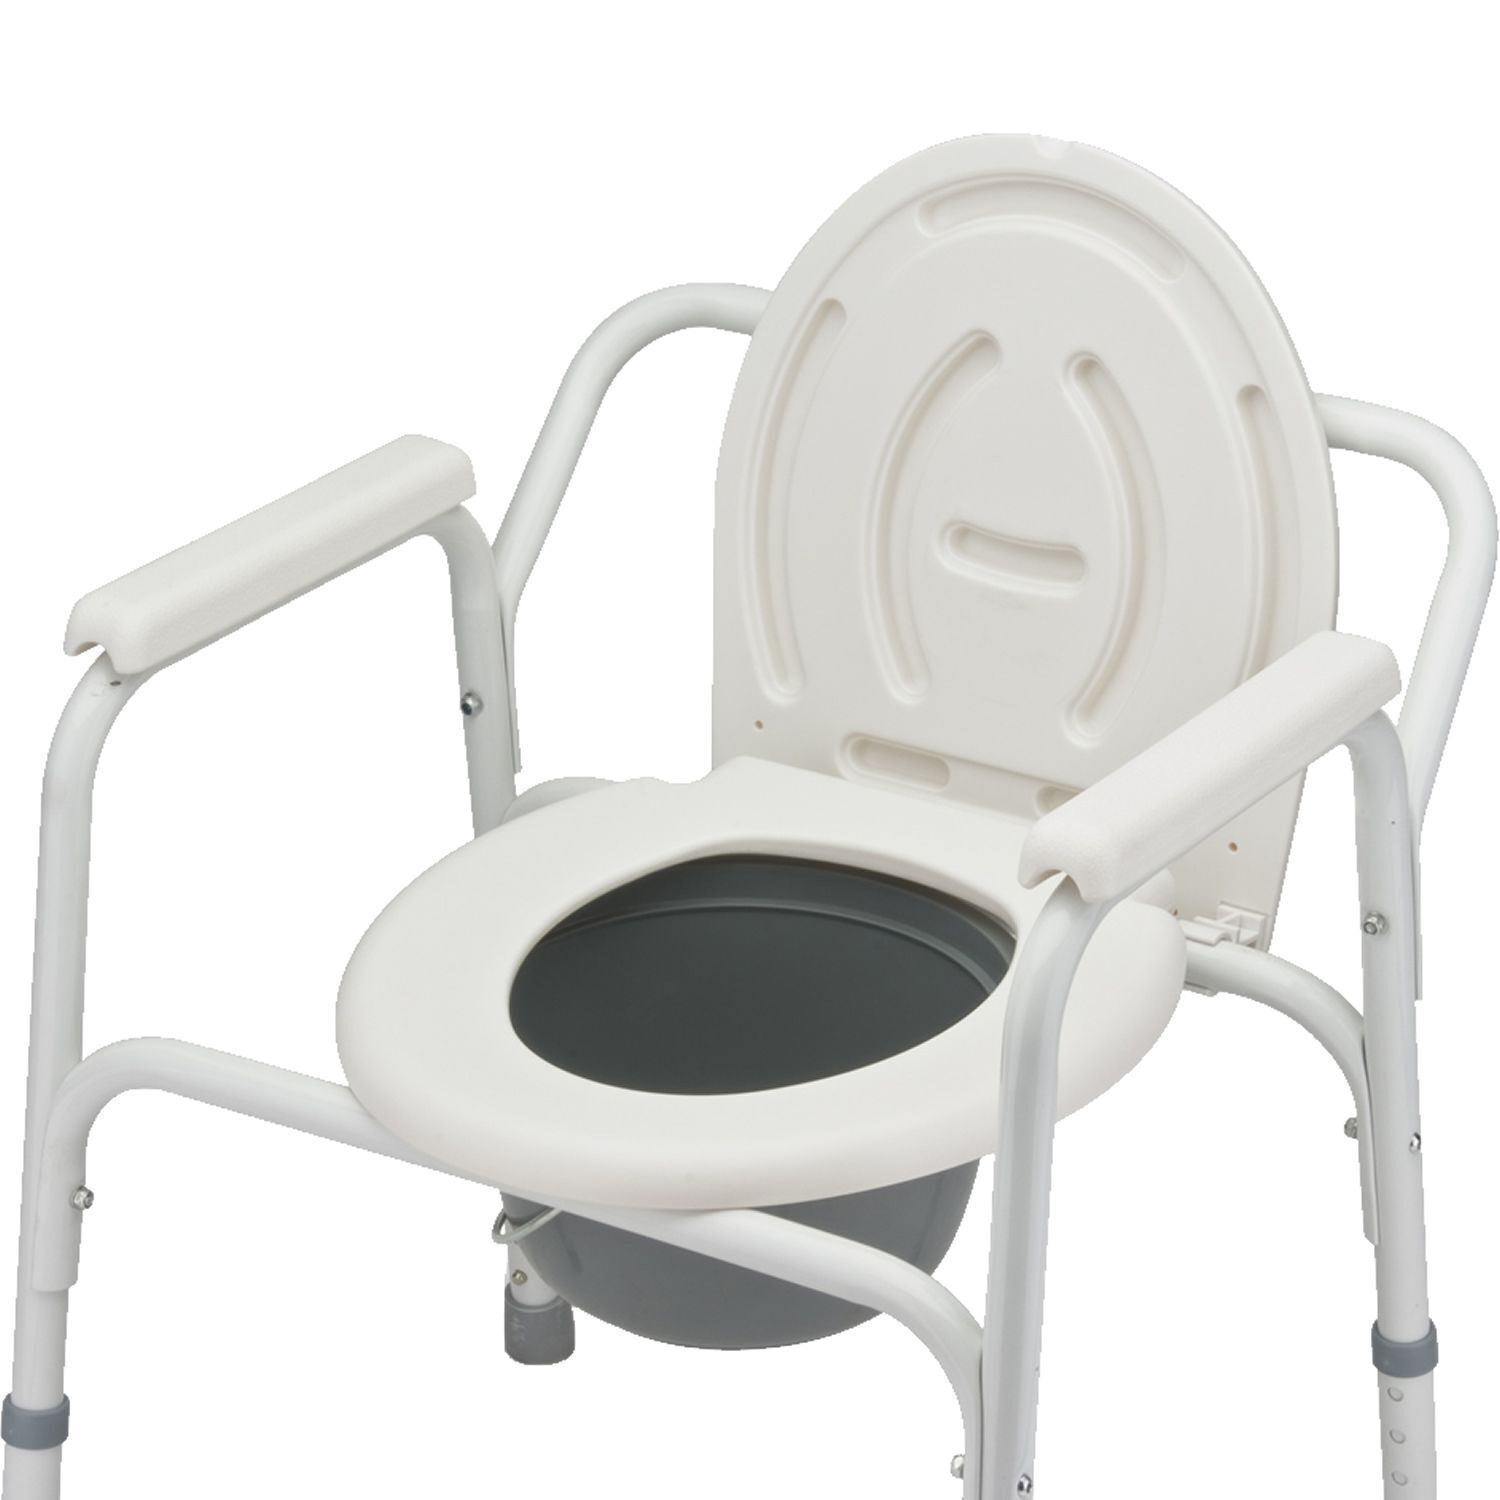 Купить сидение для инвалида. Кресло-туалет Армед fs810. Кресло туалет Армед 810. Кресло Армед фс810 с санитарным оснащением. Кресло стул Армед fs810.